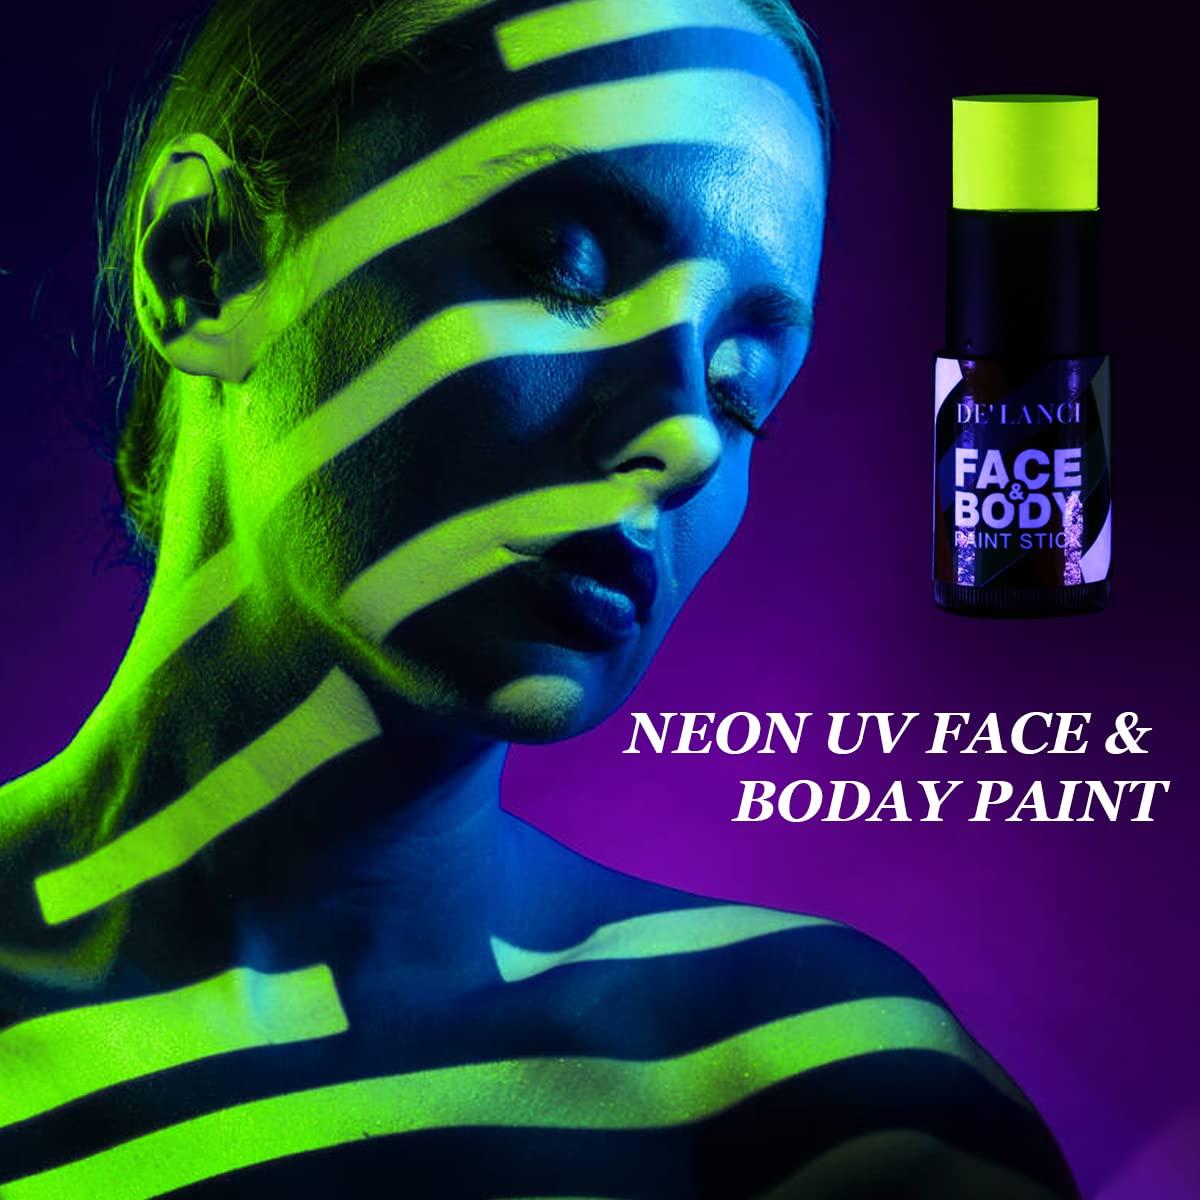 201606 Neon Face Paint Design Contest